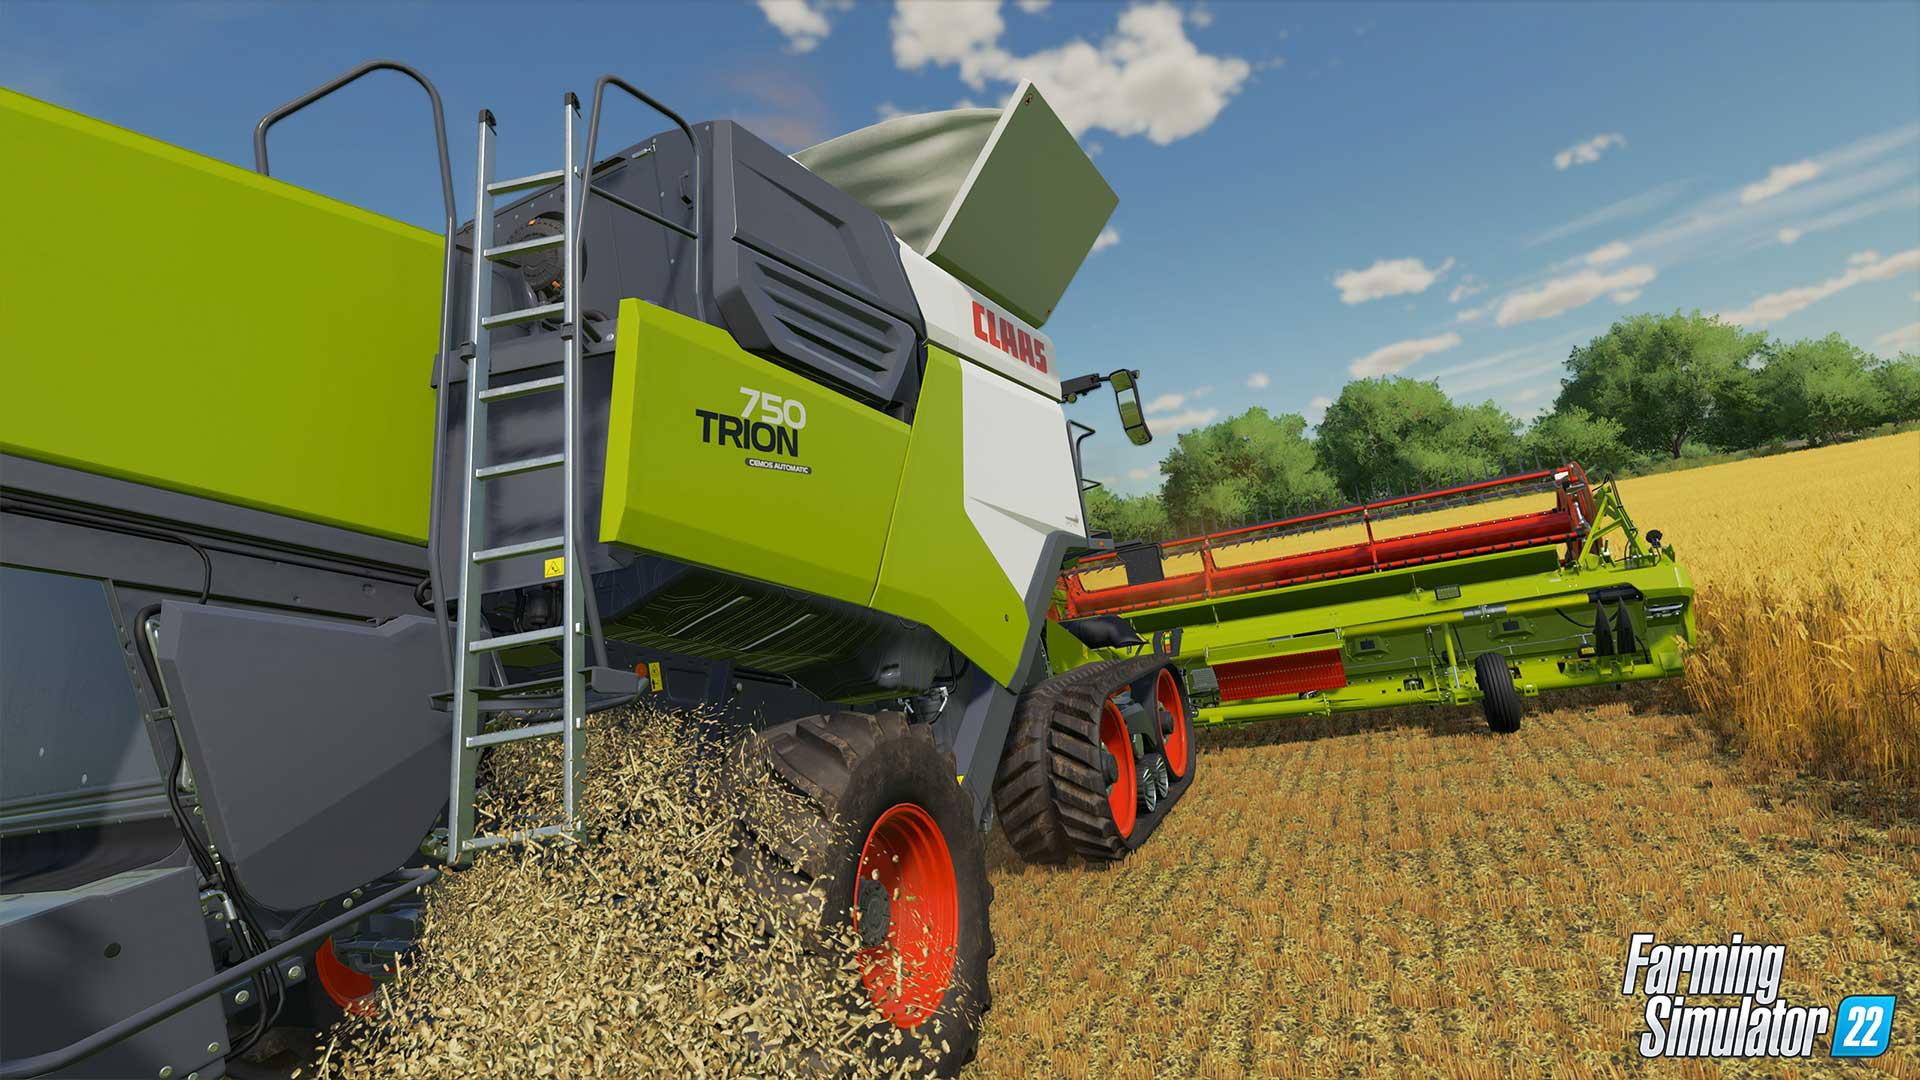 Deze maand kun je Farming Simulator 22 gratis downloaden